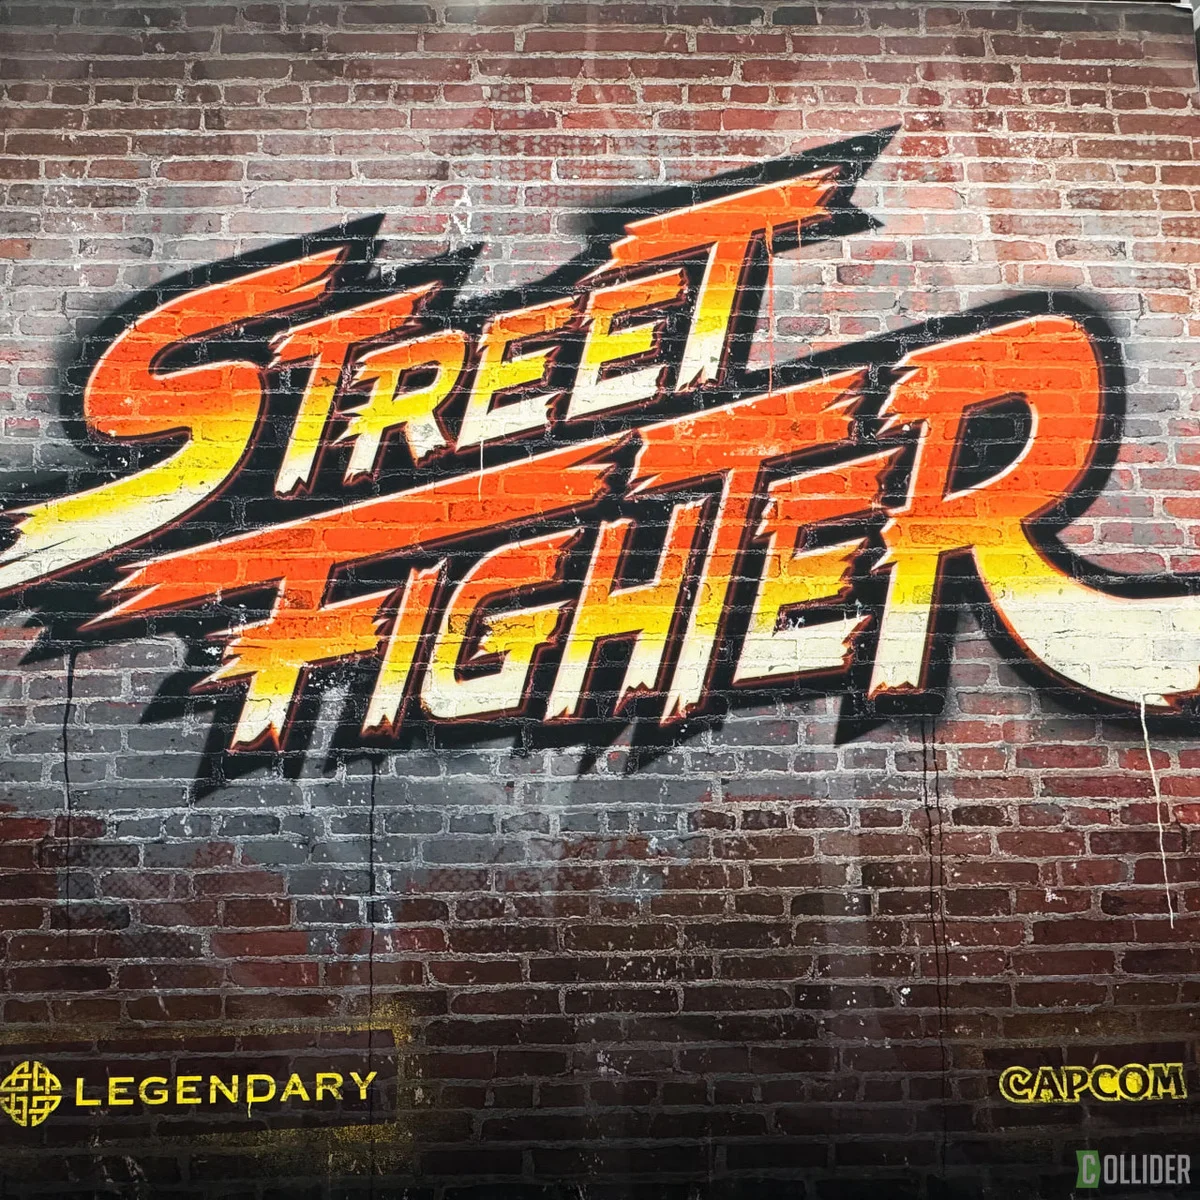 Студия Legendary представила логотип фильма по Street Fighter - фото 1